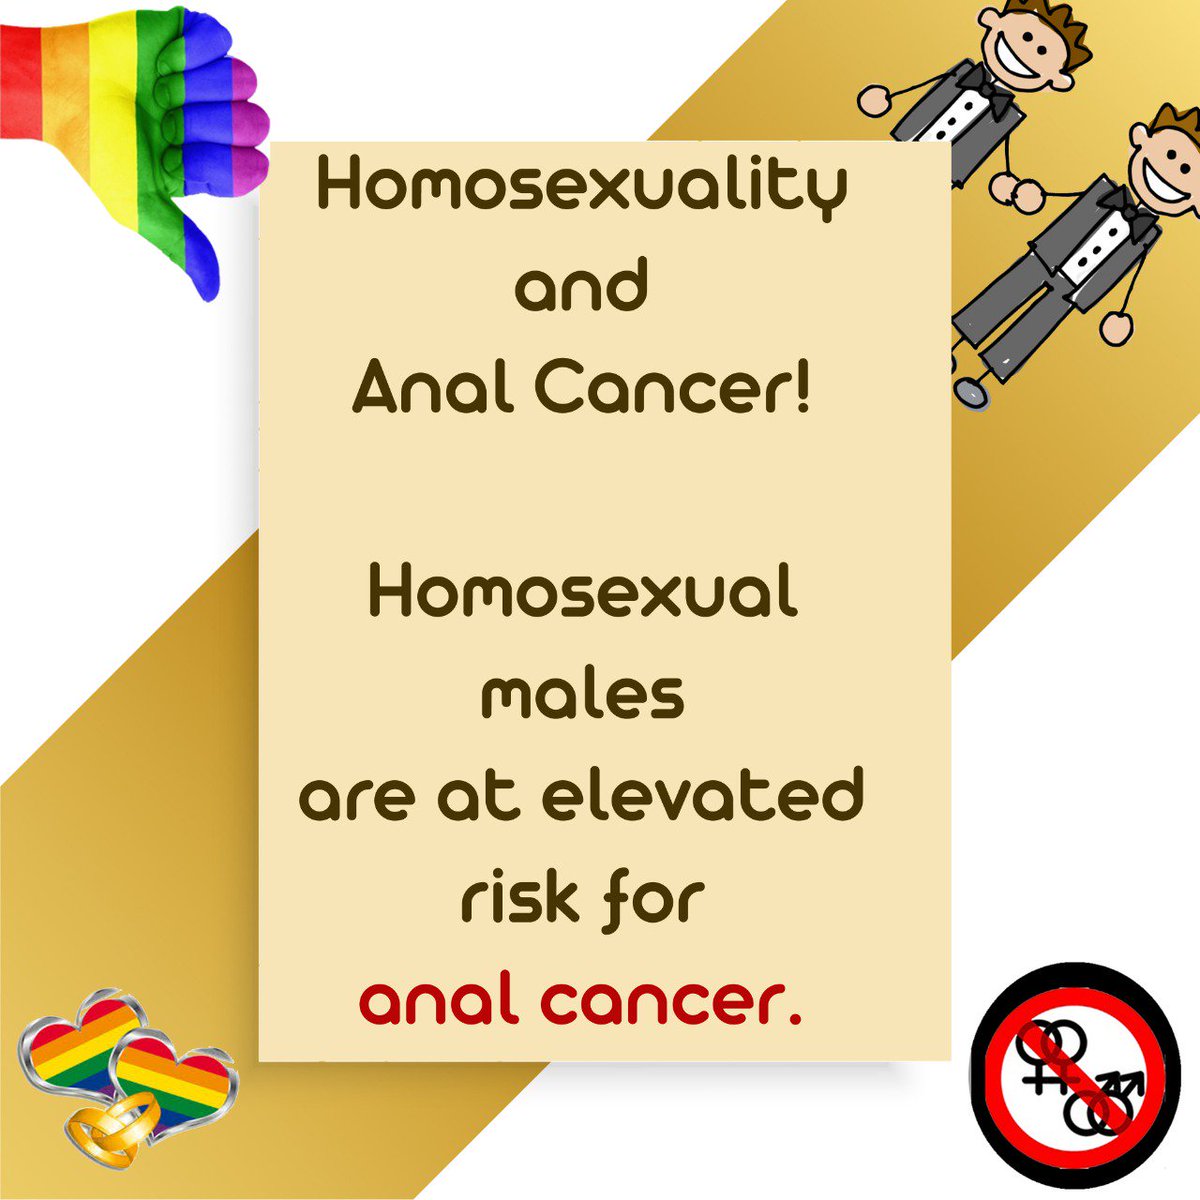 #Homosexuality_Not_Accepted 
समलैंगिकता एक विकार है। यह प्रगती के विरुद्ध मन माना आचरण तो है ही इसके साथ-साथ यह सभ्य समाज के लिए भी बहुत हानिकारक है।
@Anukrithy_Vas 
@SairatMovie 
@CandaceMcCowan7 
@BILeadership 
@Nilws